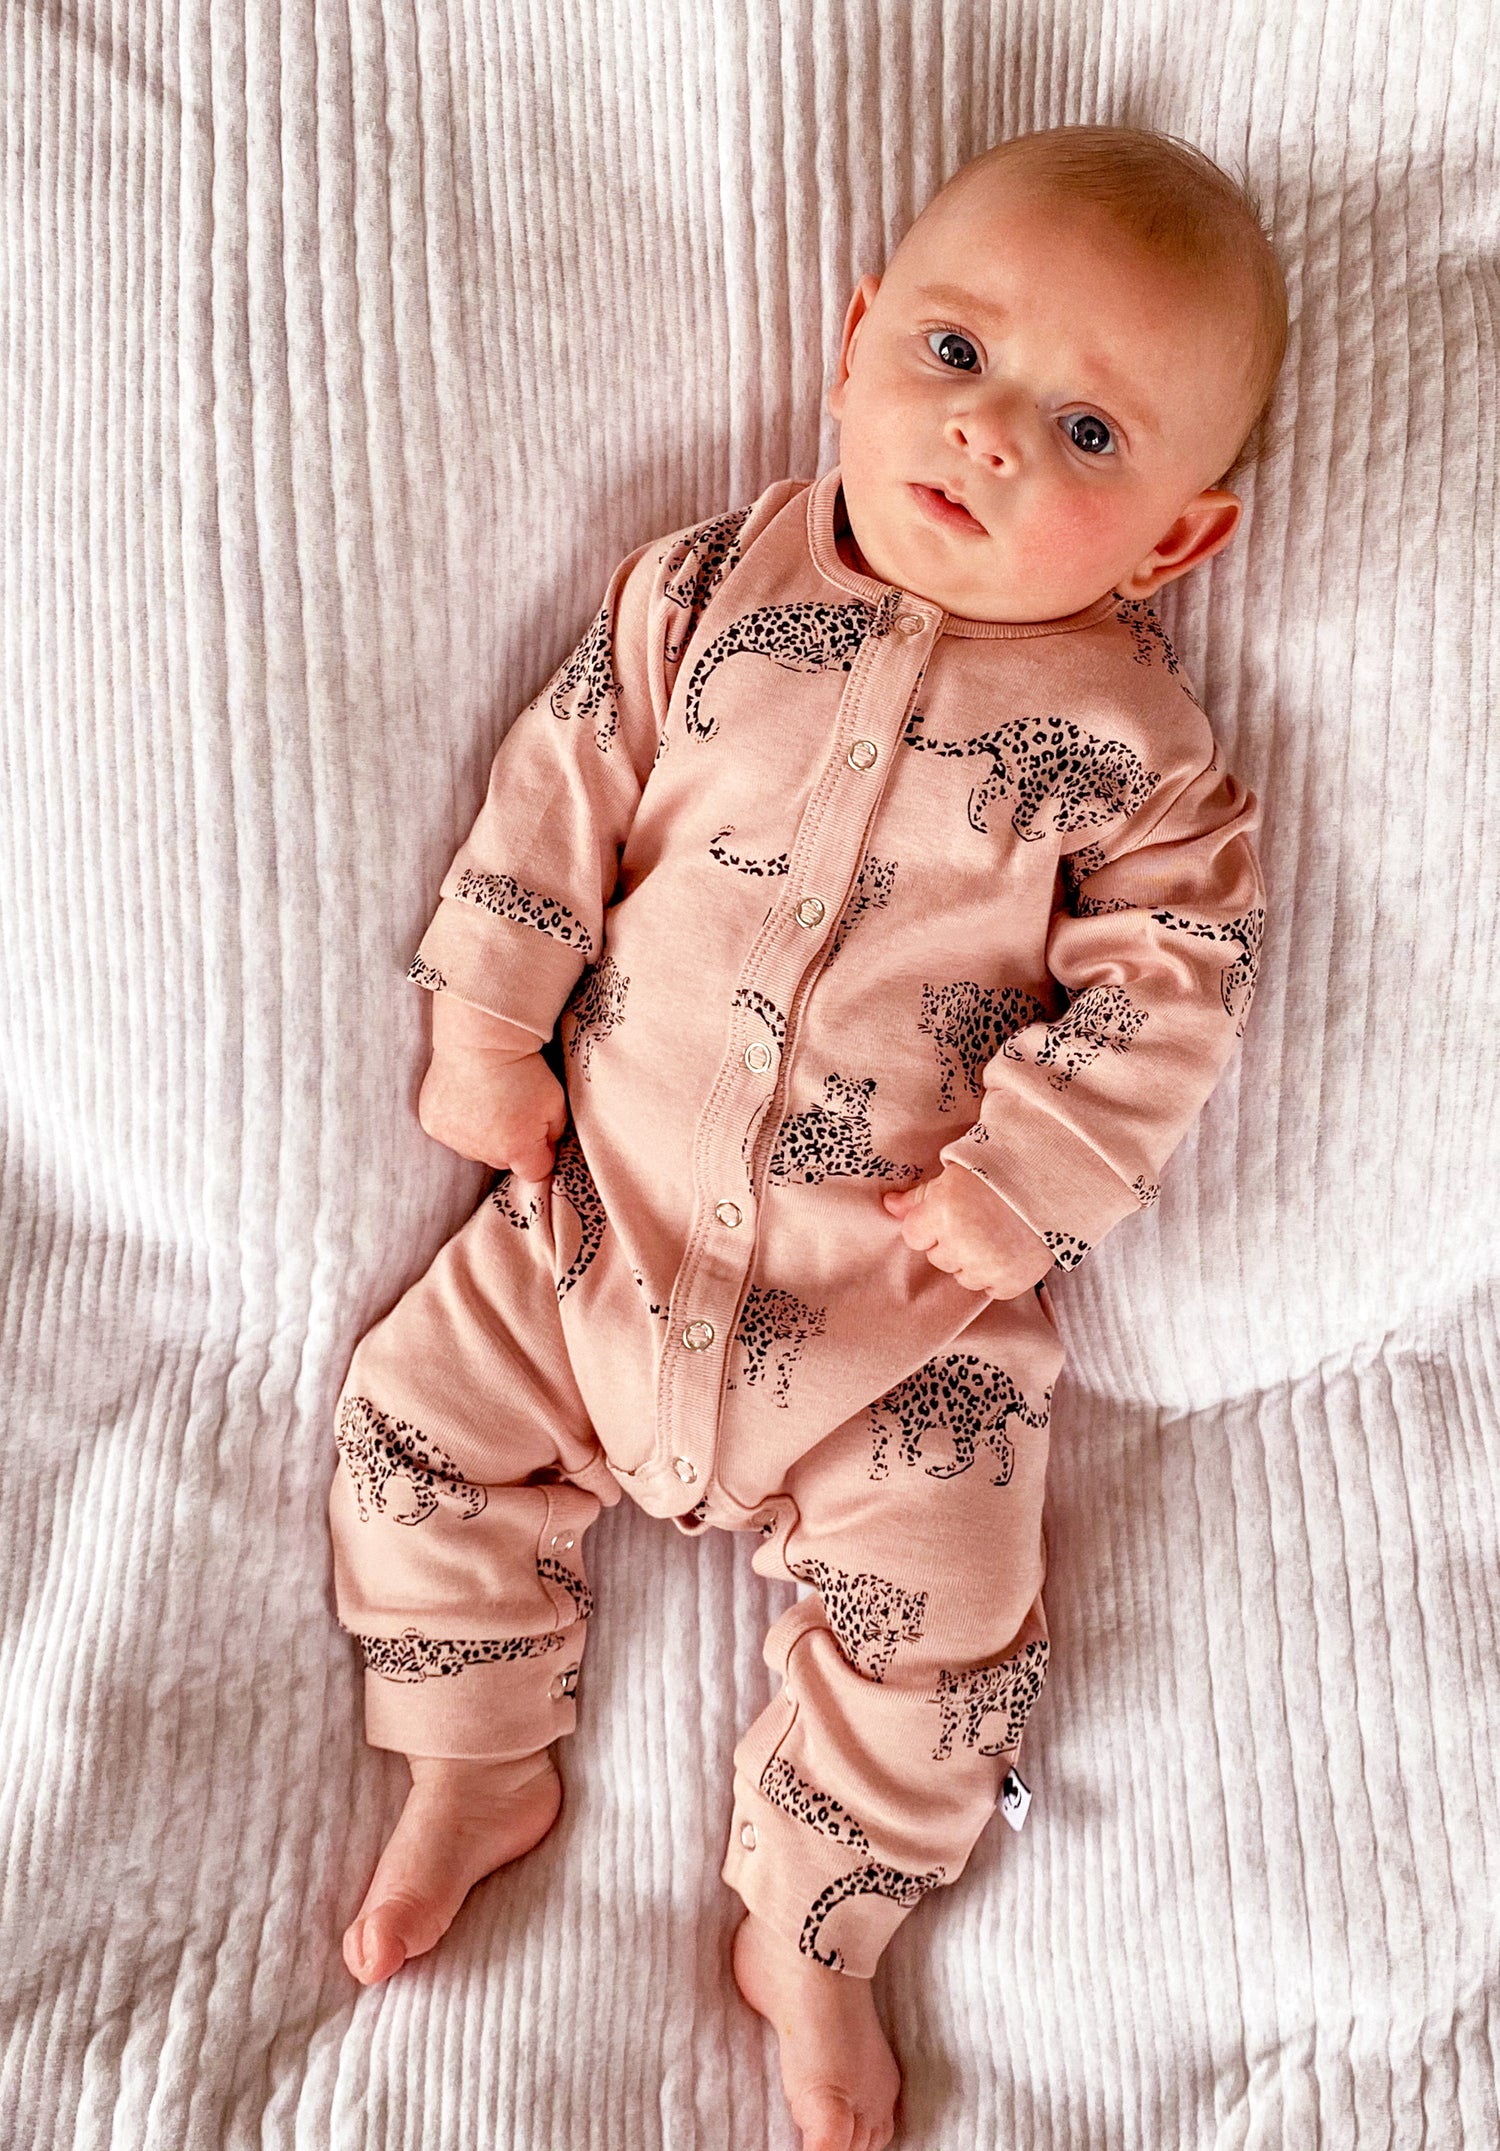 Baby wearing leopard print romper